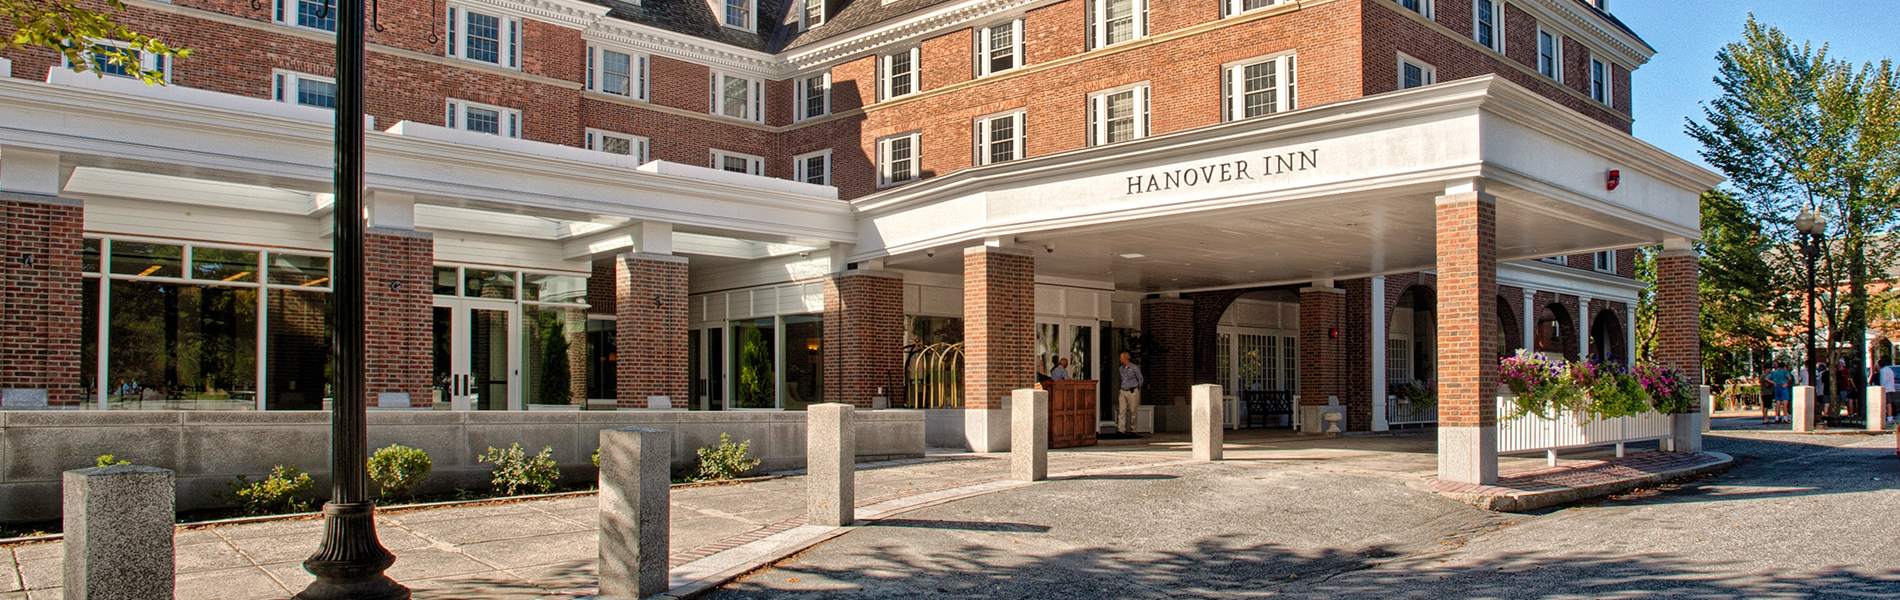 Hanover Inn Dartmouth Entrance